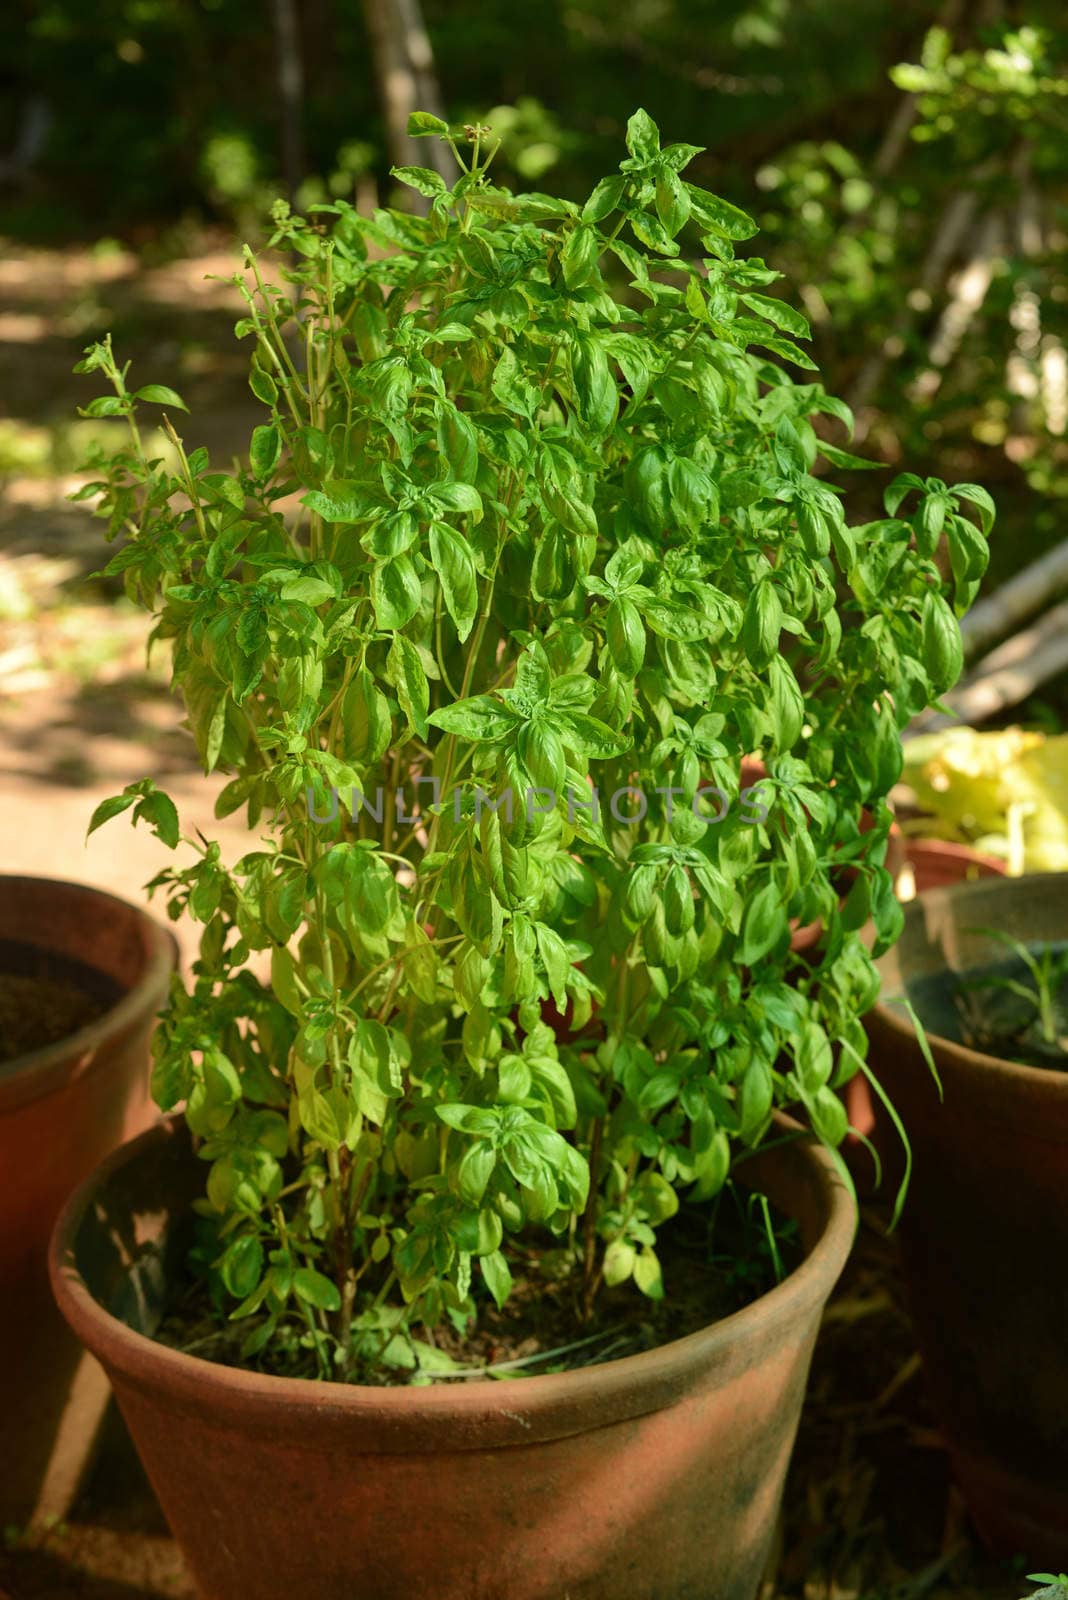 basil herb growing by ftlaudgirl